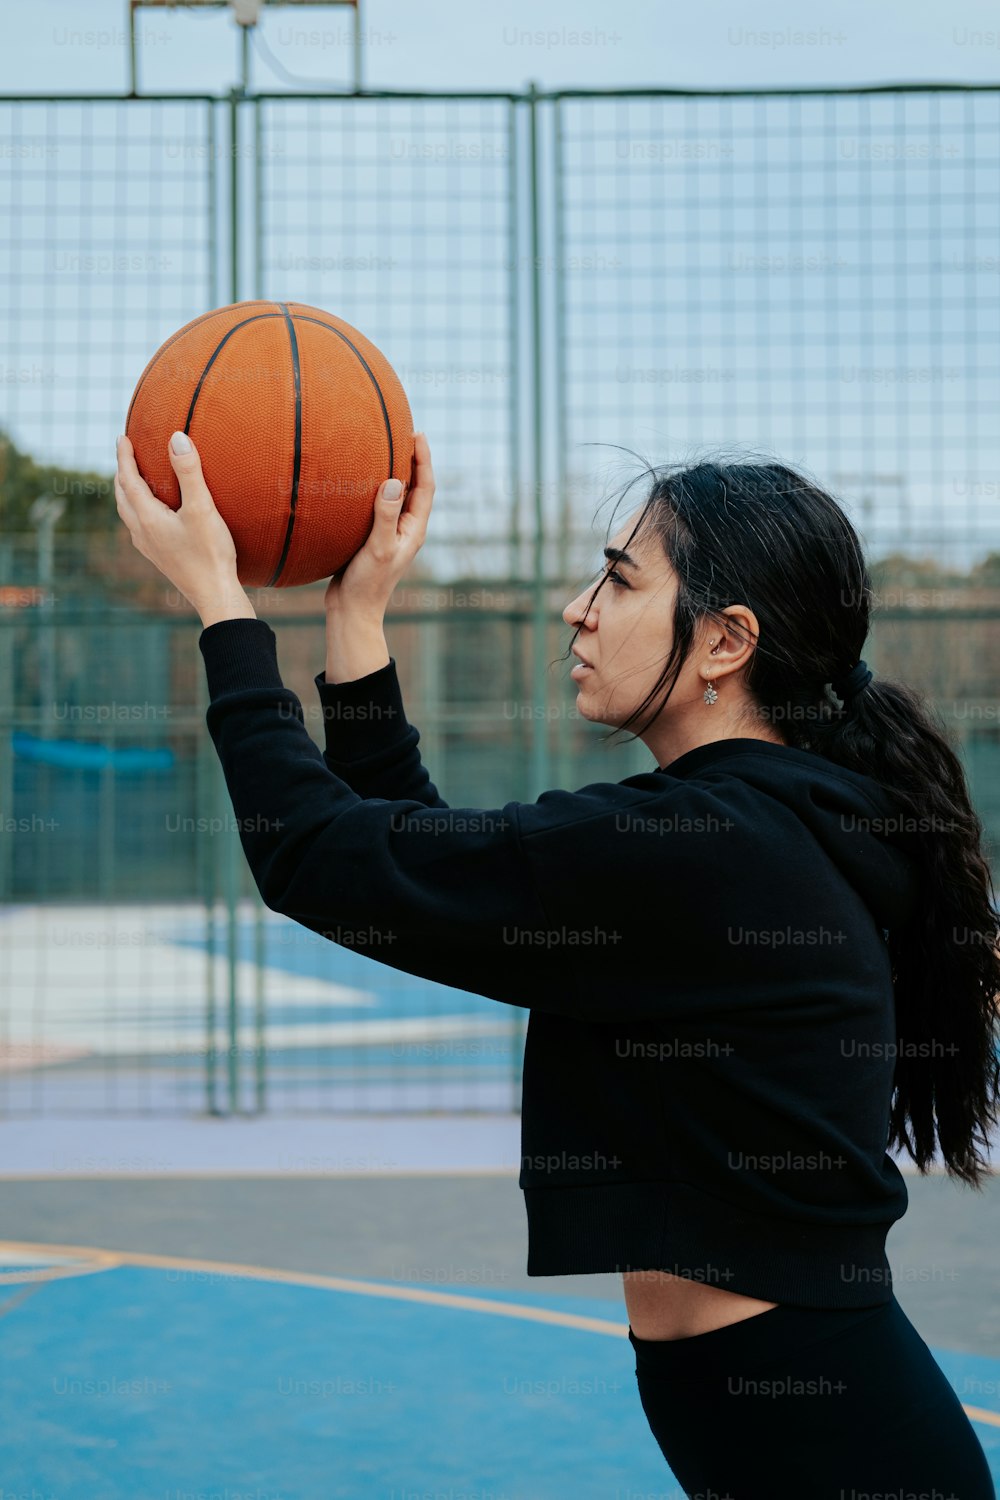 Eine Frau, die einen Basketball auf einem Basketballplatz hält